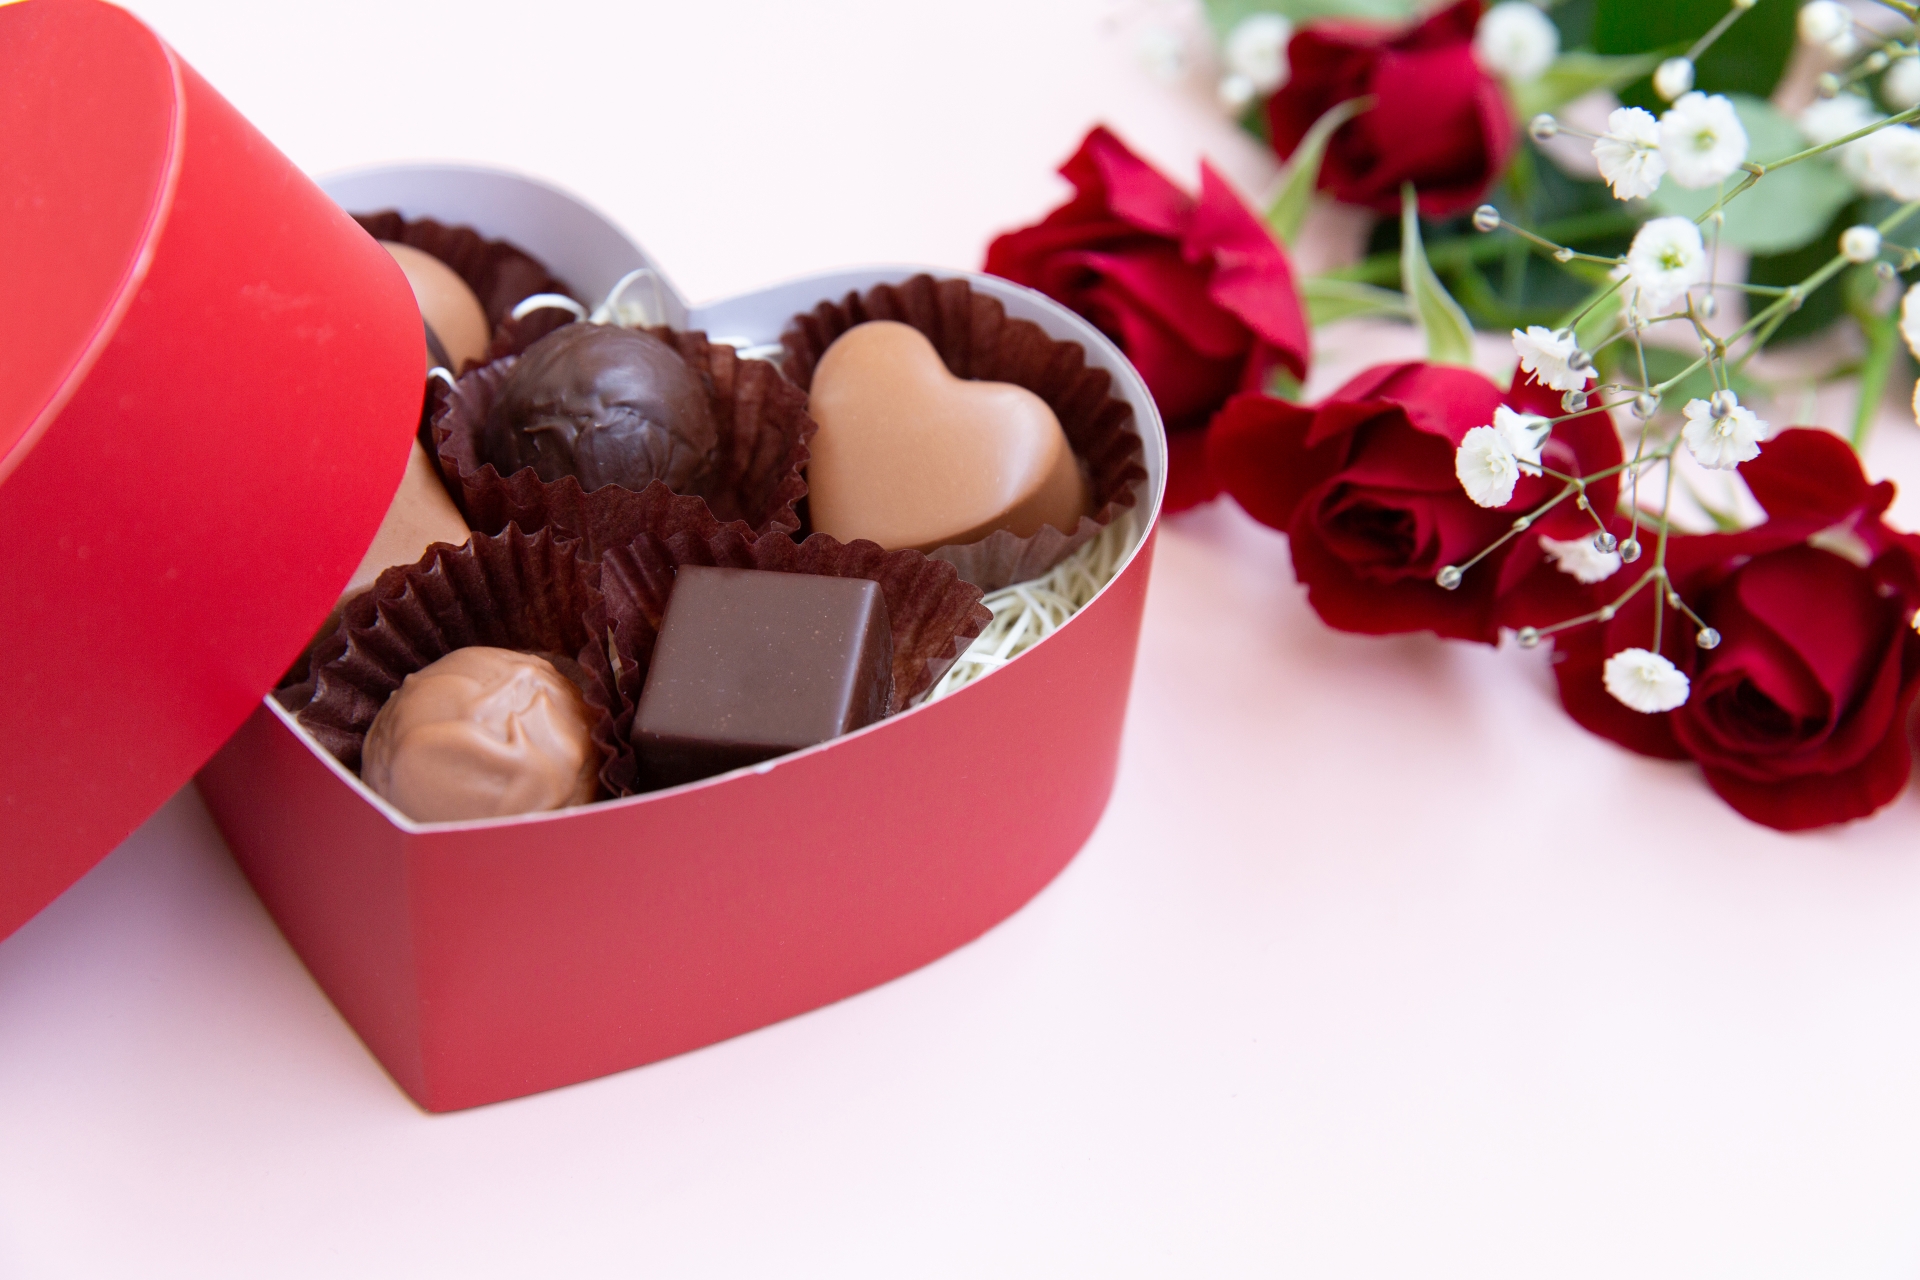 テーブルの上に置かれたバレンタインのチョコレートとバラの花。ハート型の箱の中には６粒のチョコレートが入っています